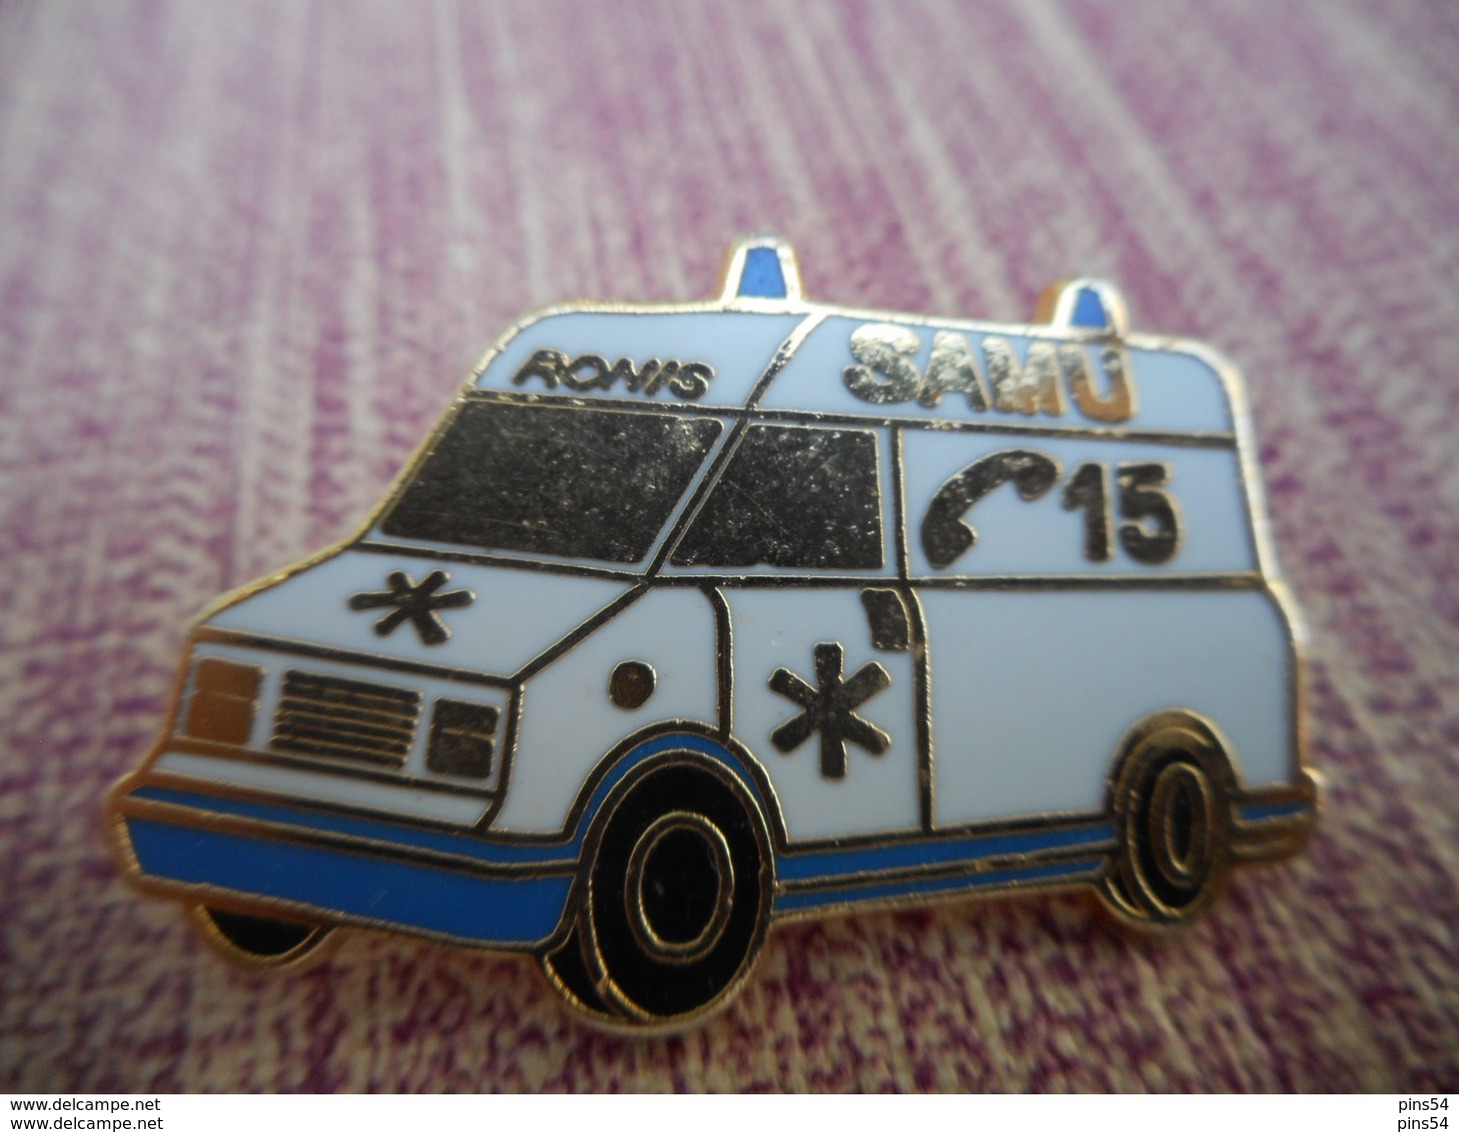 A009 -- Pin's Ronis Ambulance 15 - Transports